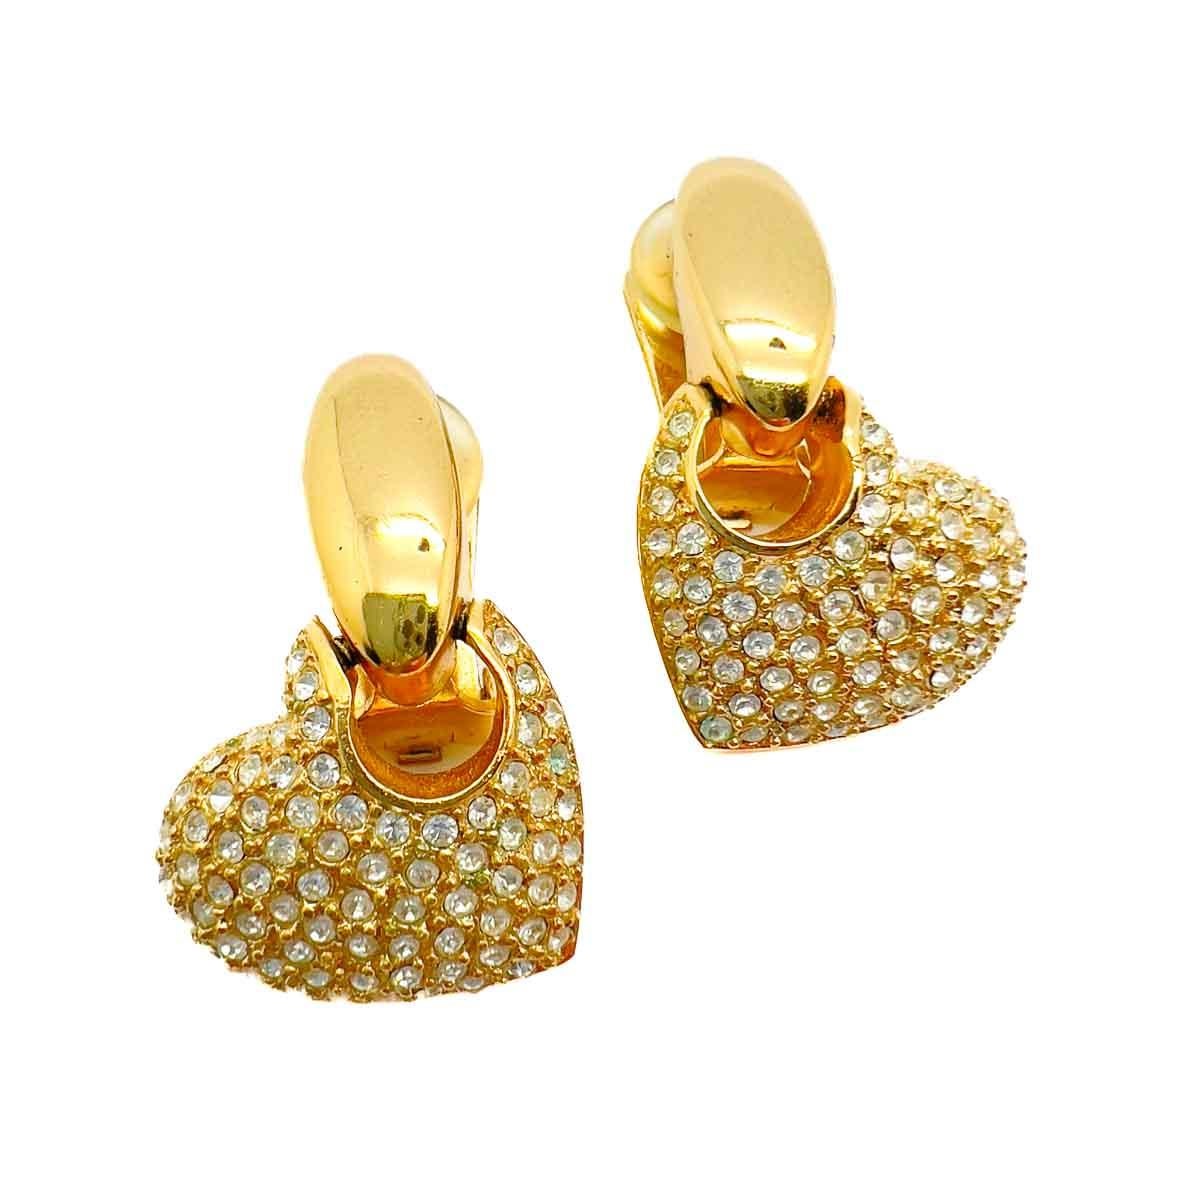 Ein Paar Herz-Ohrringe von Vintage Grossé. Das Beste aus beiden Welten mit glänzendem Gold und Kristallen in ihrer erfolgreichen Kombination. Eine schicke und zeitlose Ergänzung für Ihr Schmuckrepertoire.
Von modernistischen bis hin zu